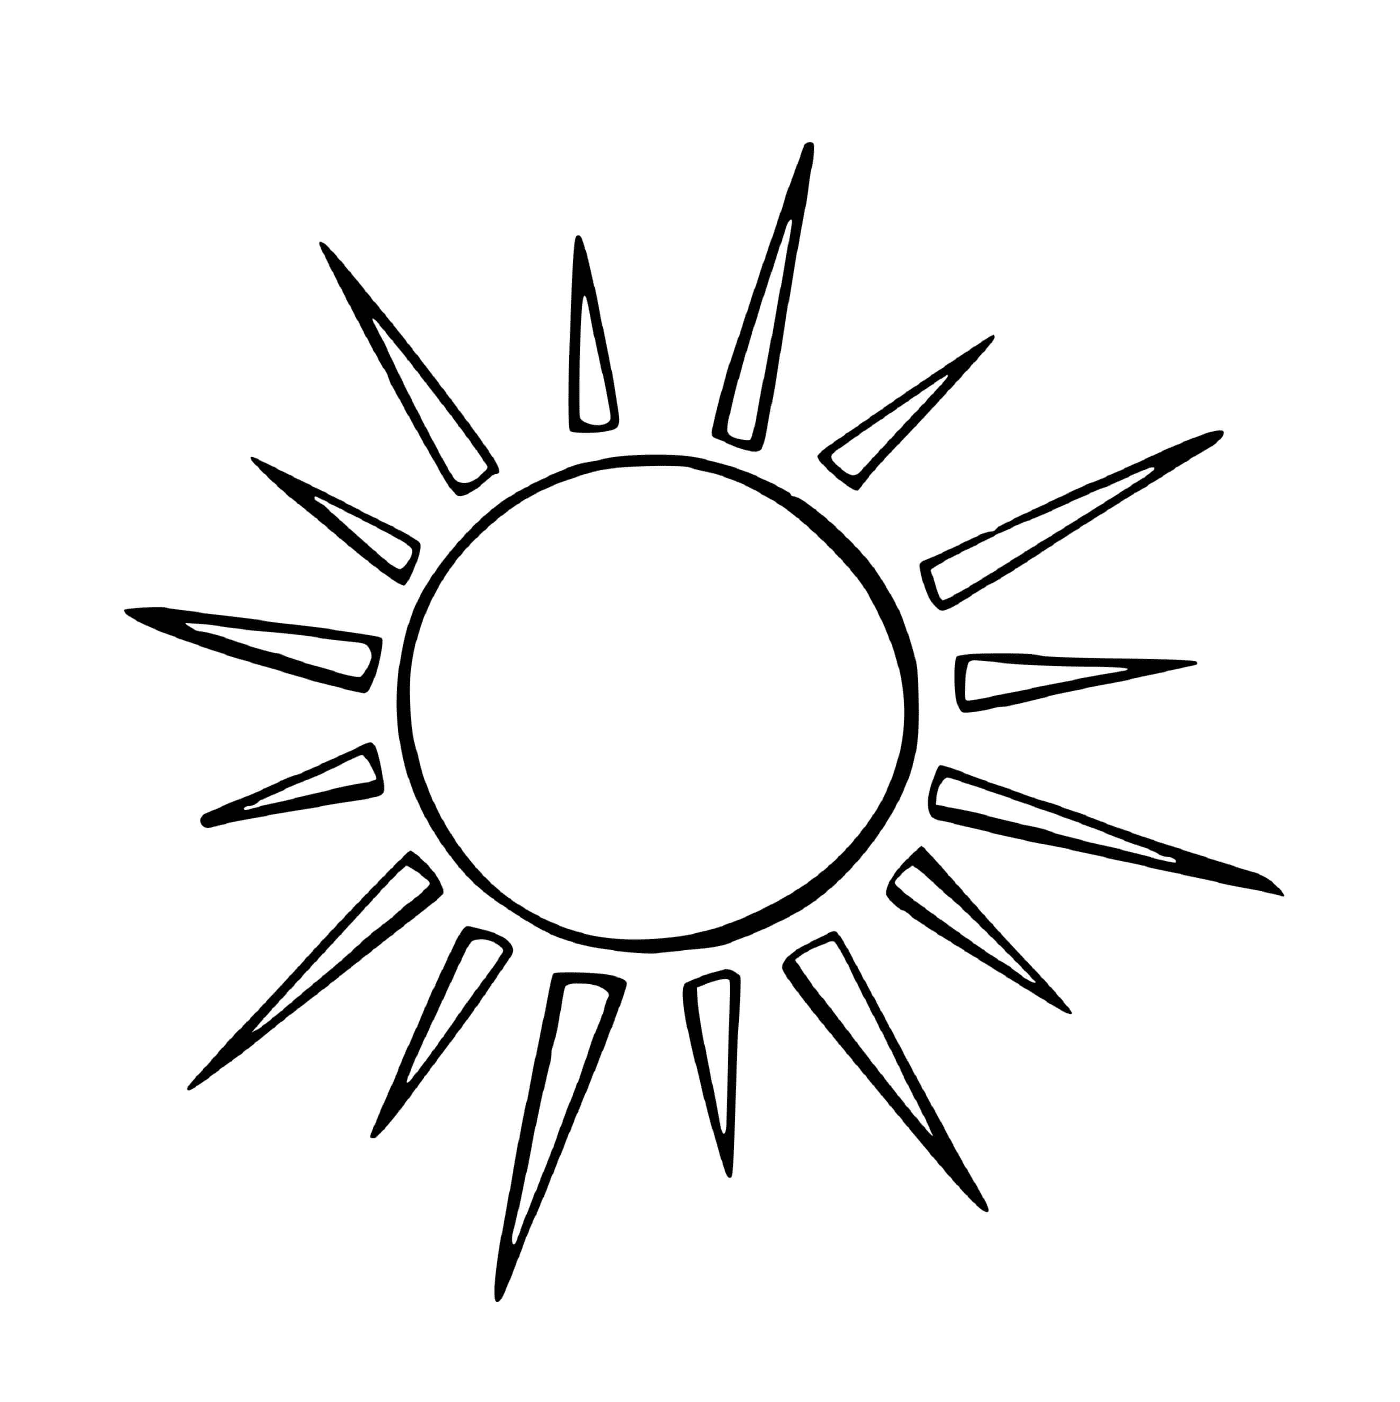  Sol con radiación puntiaguda 